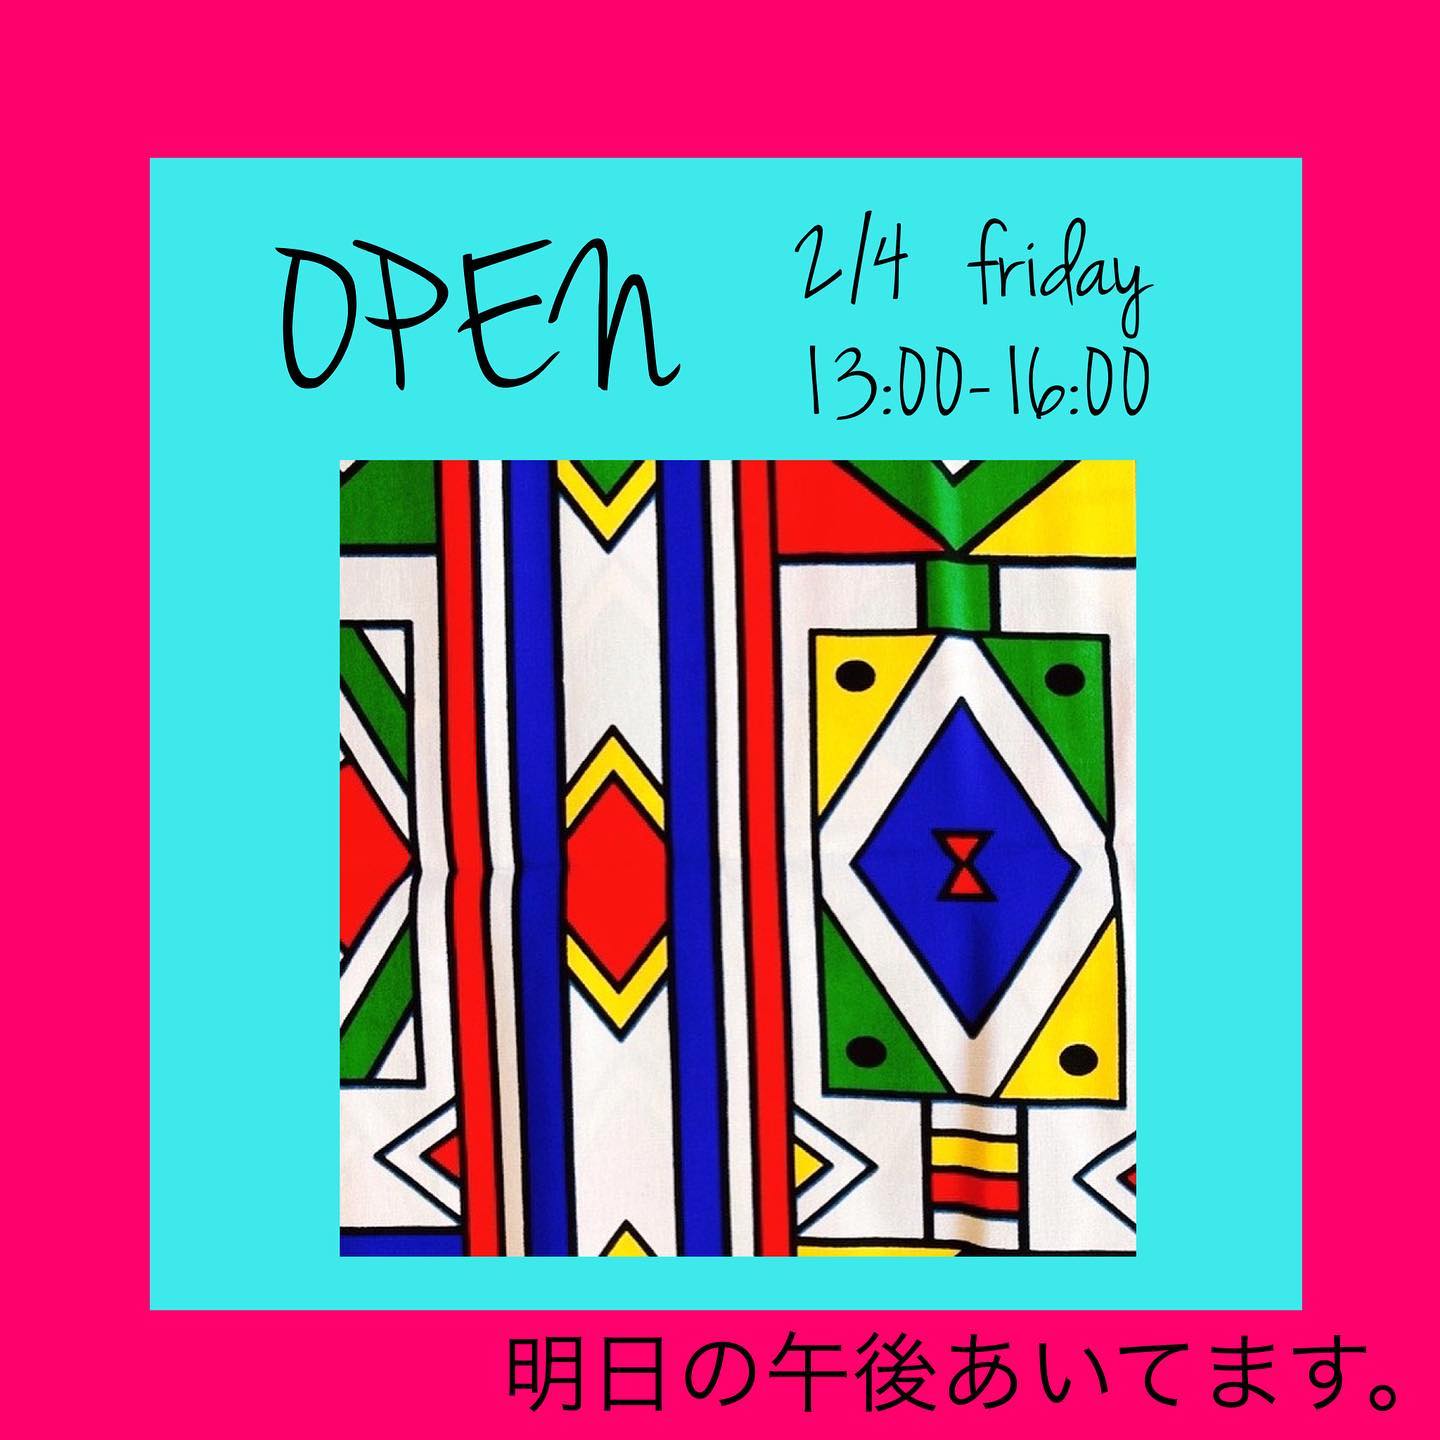 シクンジェマ、明日（2/4）OPENします!page-visual シクンジェマ、明日（2/4）OPENします!ビジュアル